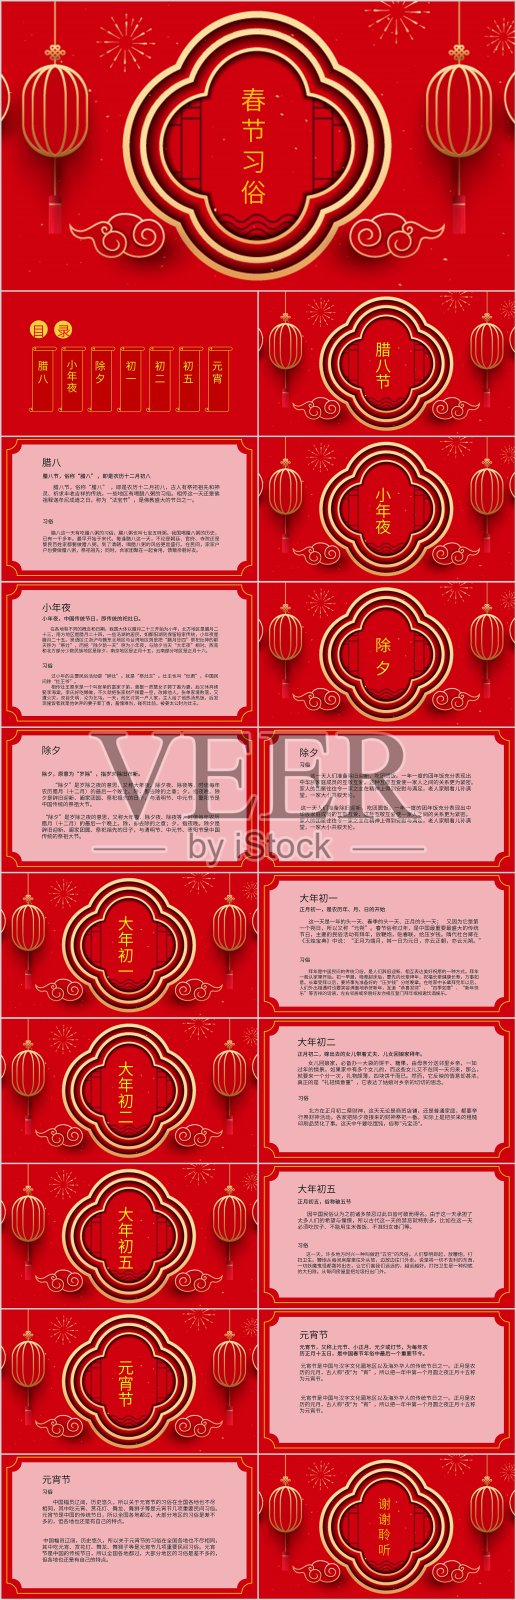 红色喜庆春节新年习俗介绍PPT模板设计模板素材